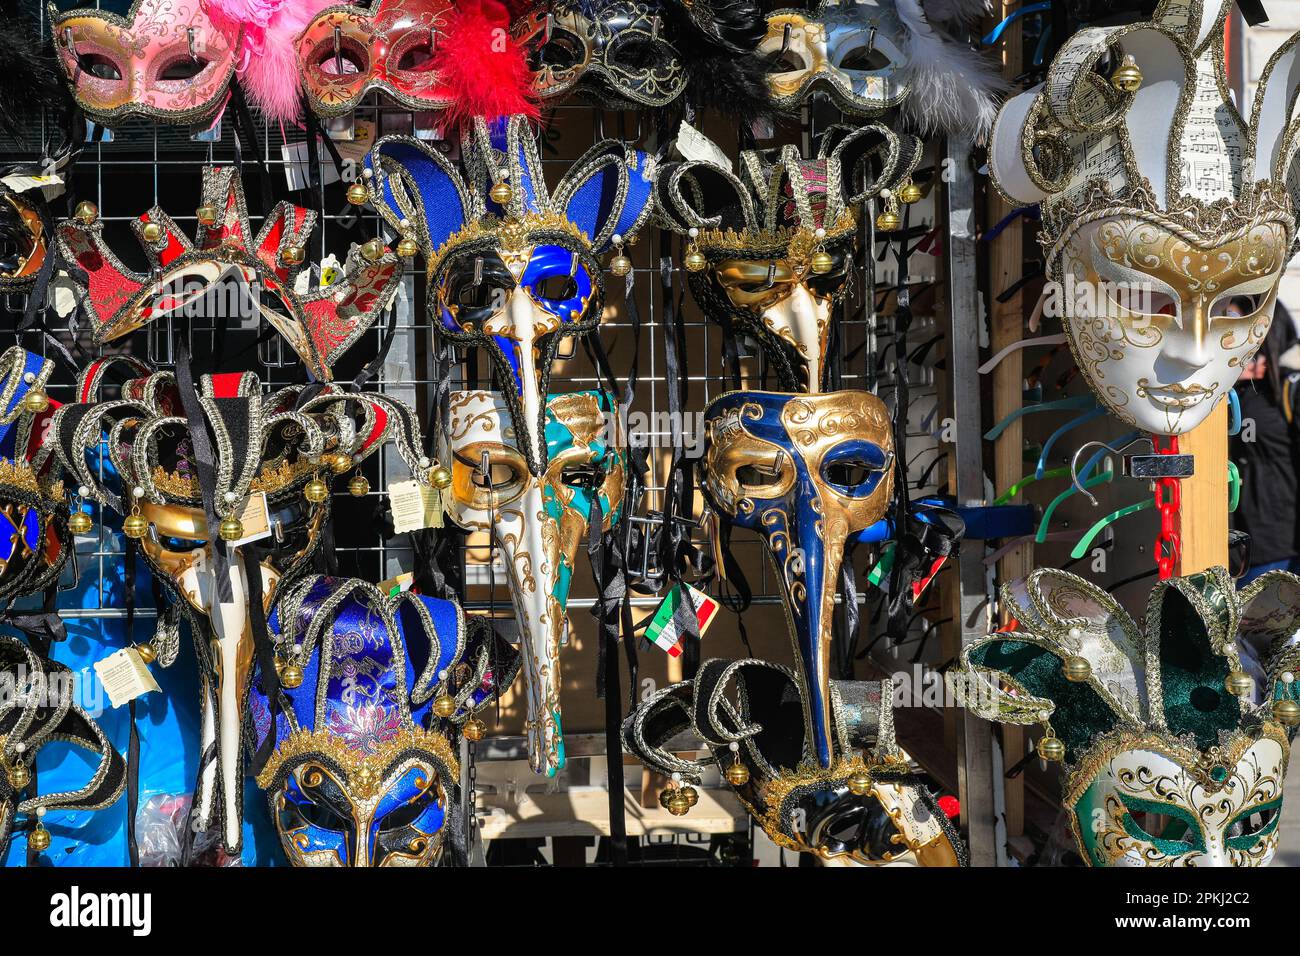 Máscaras de carnaval de Venecia en un puesto de recuerdos, recuerdos venecianos, Venecia, Italia Foto de stock